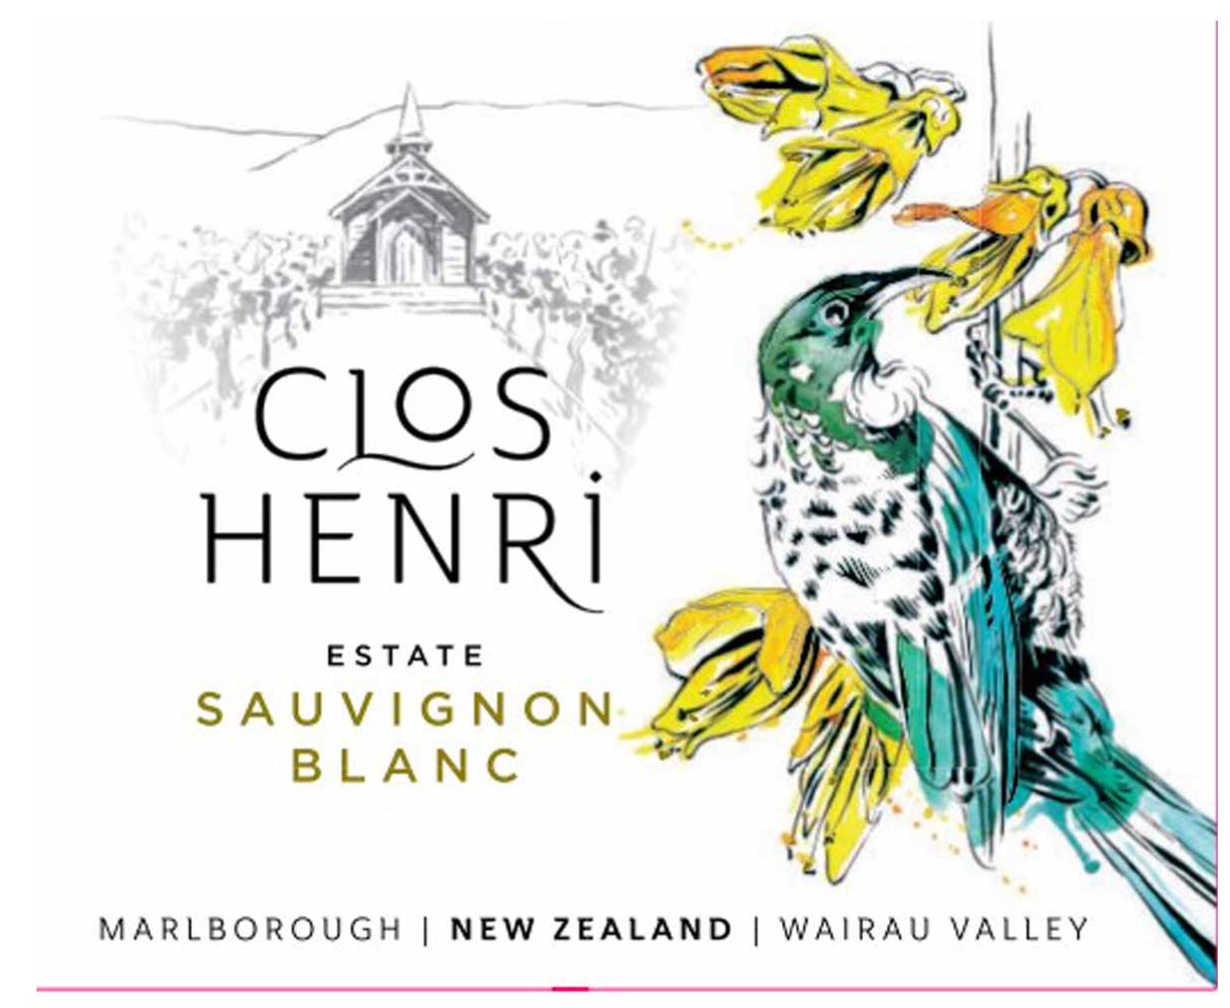 Clos Henri - Estate Sauvignon Blanc label